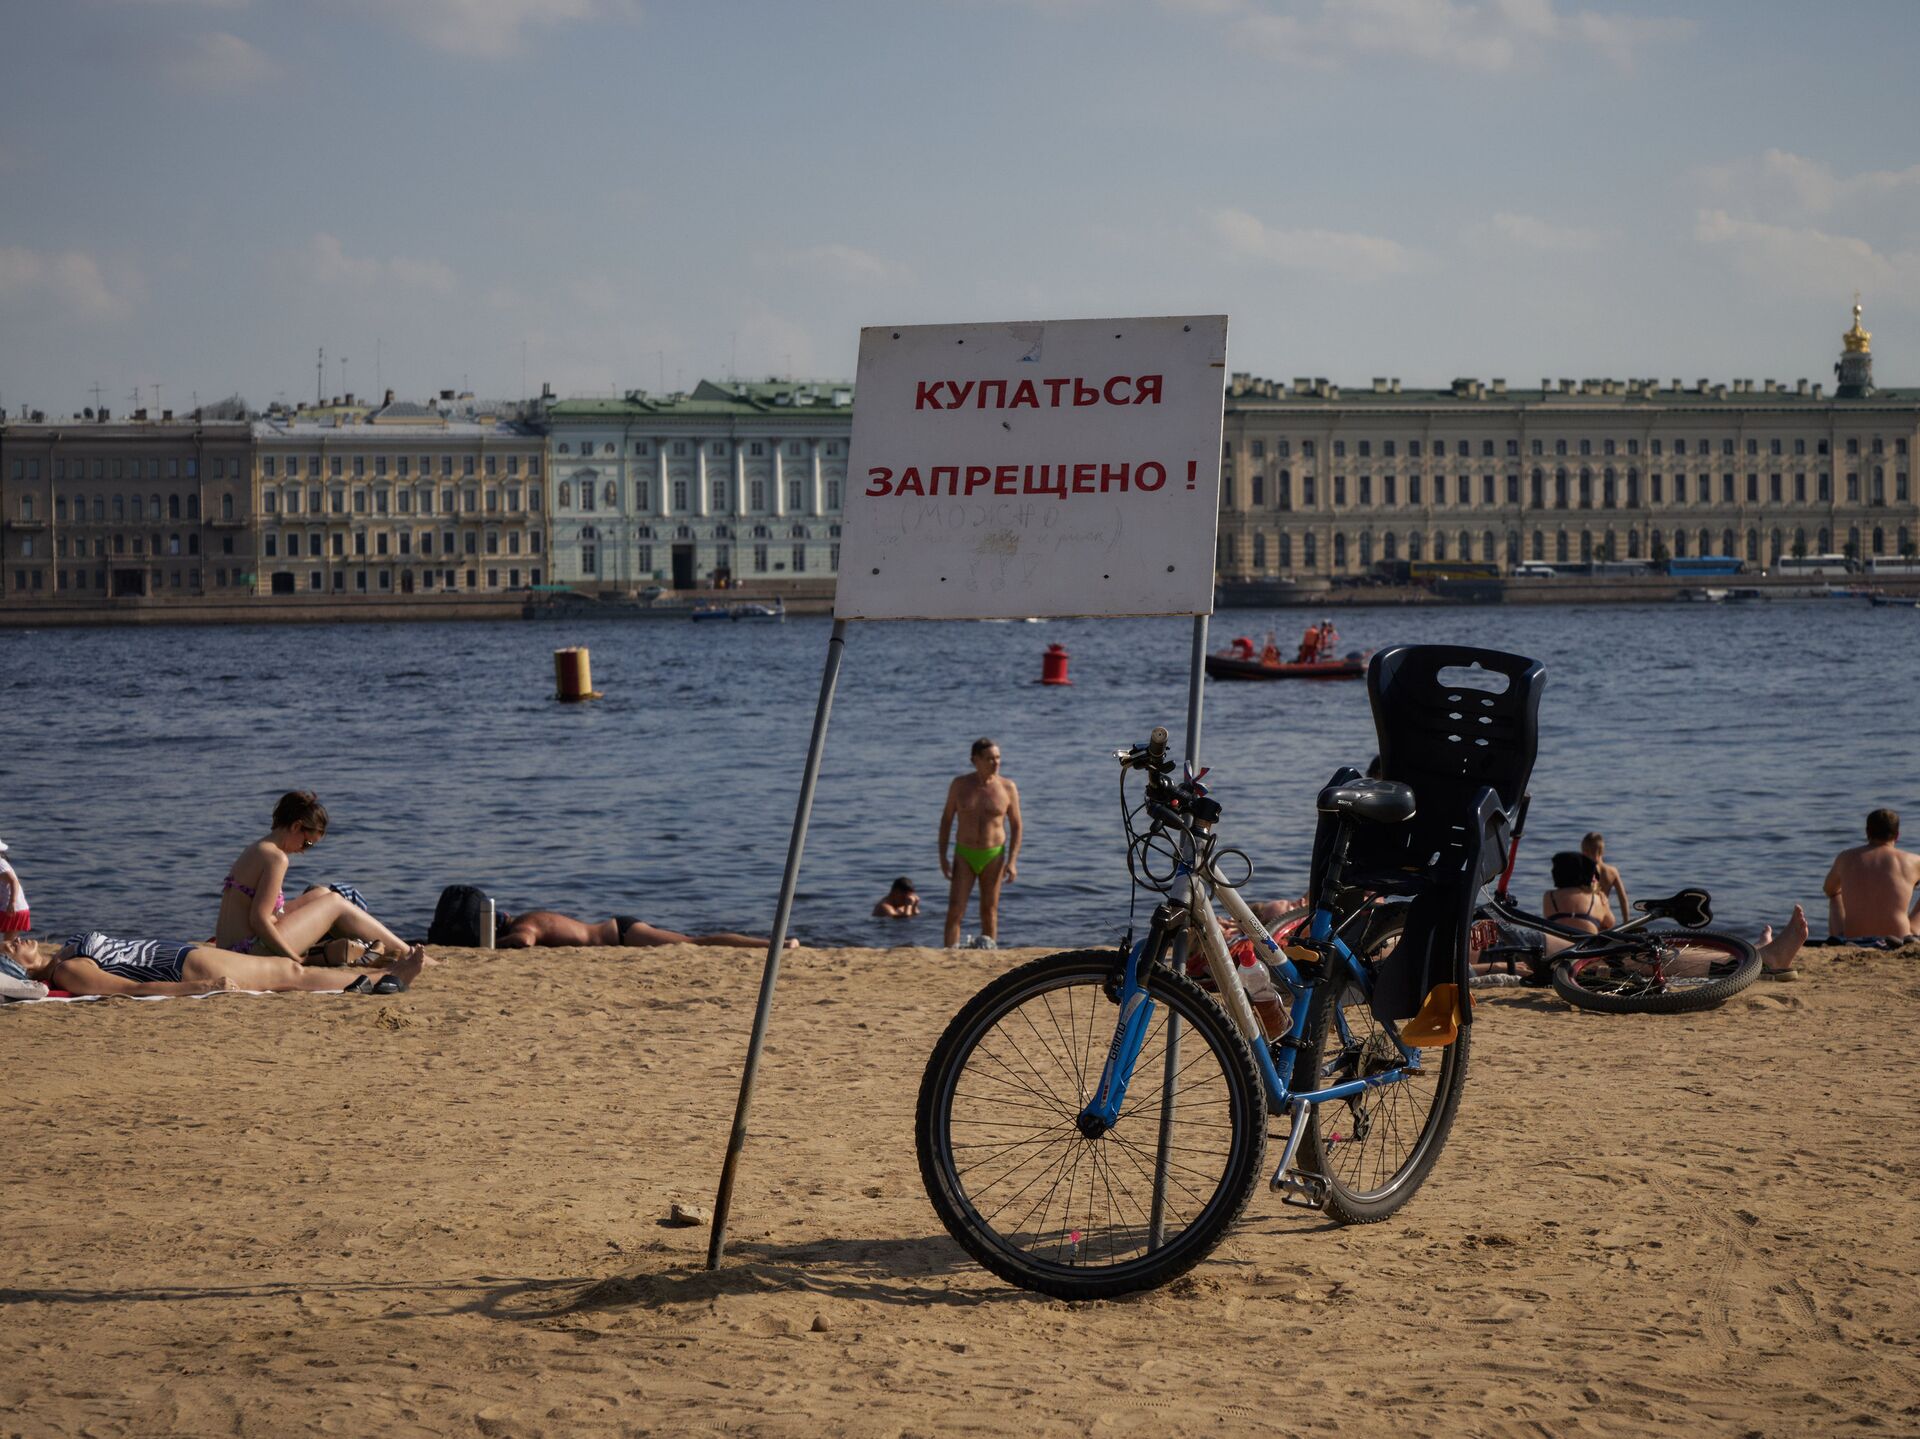 Пляжи в санкт-петербурге — где можно купаться?